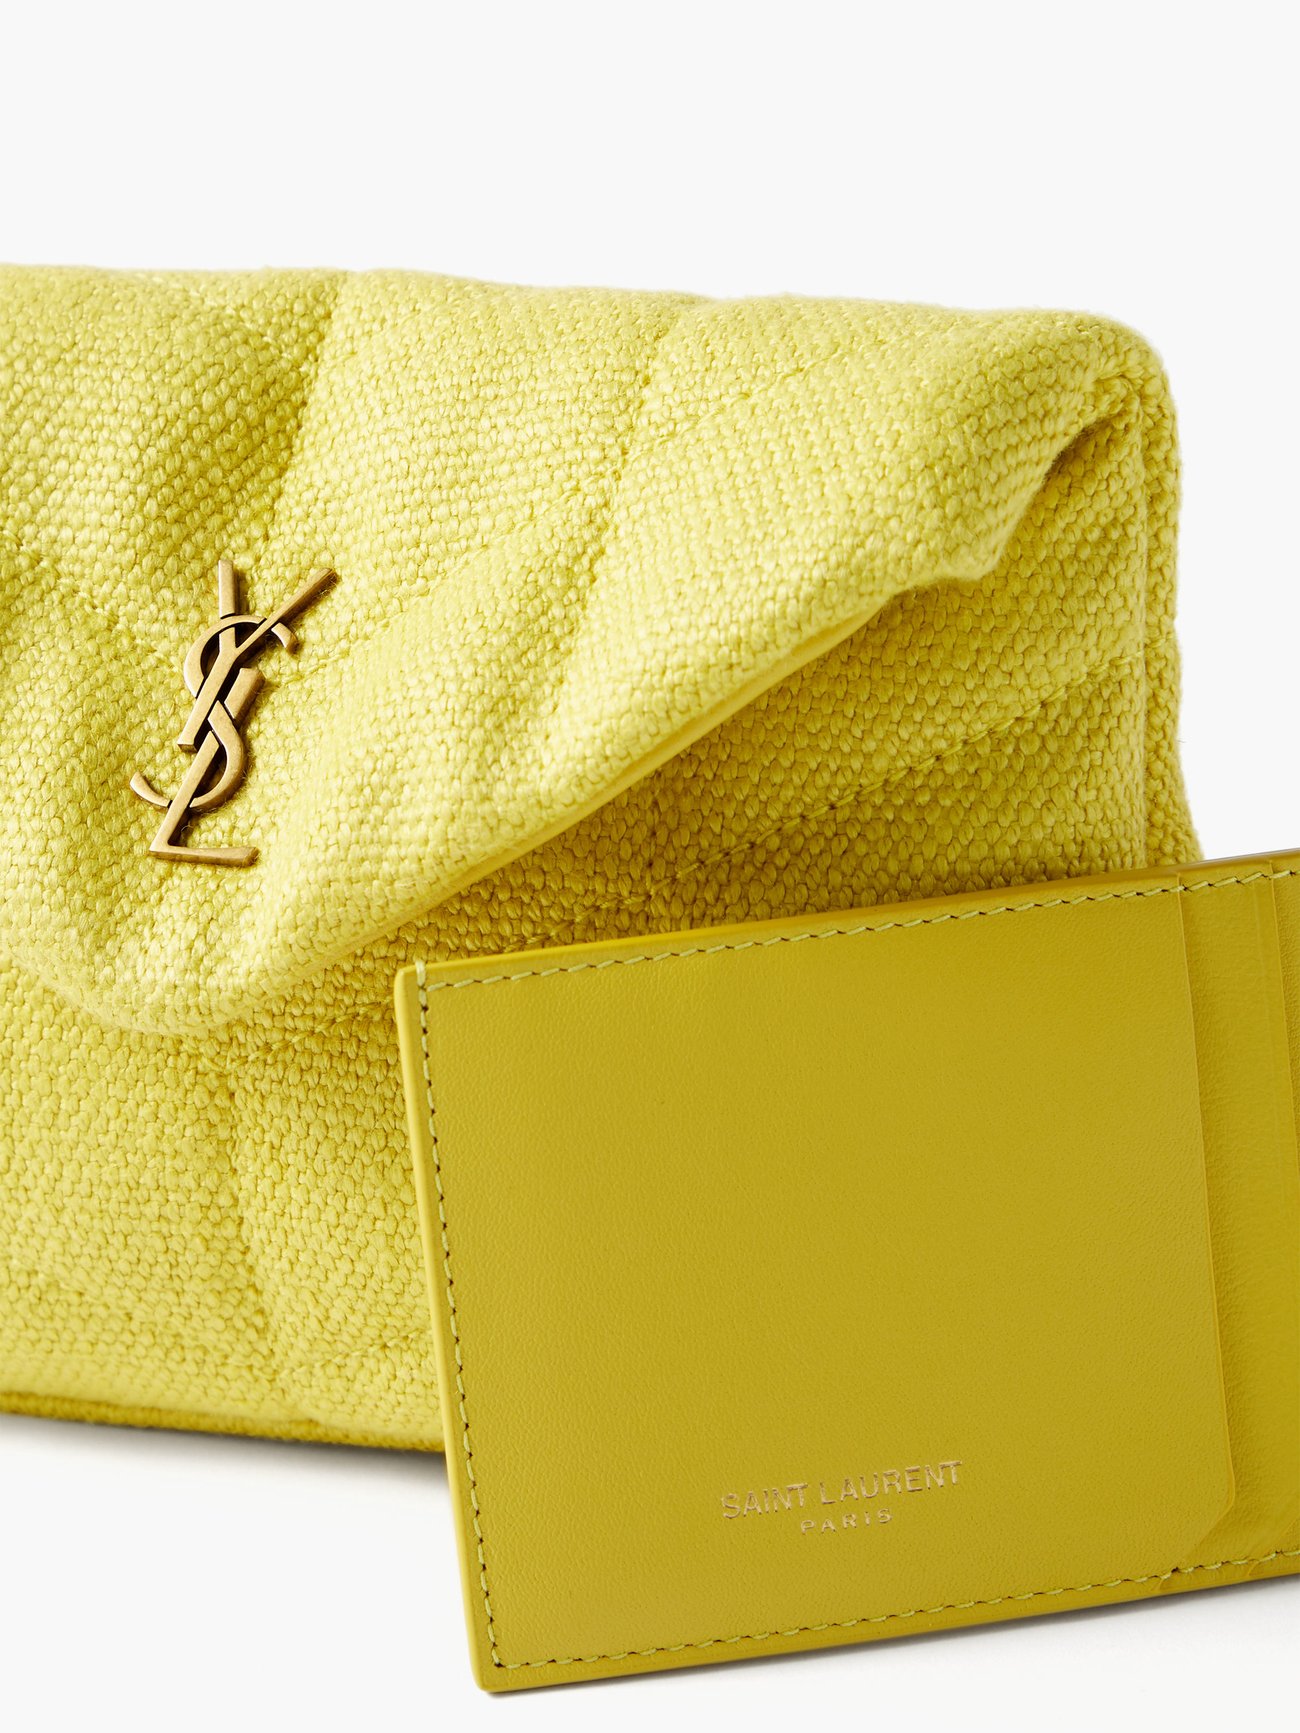 Yellow Monogram matelassé-canvas envelope clutch bag, Saint Laurent